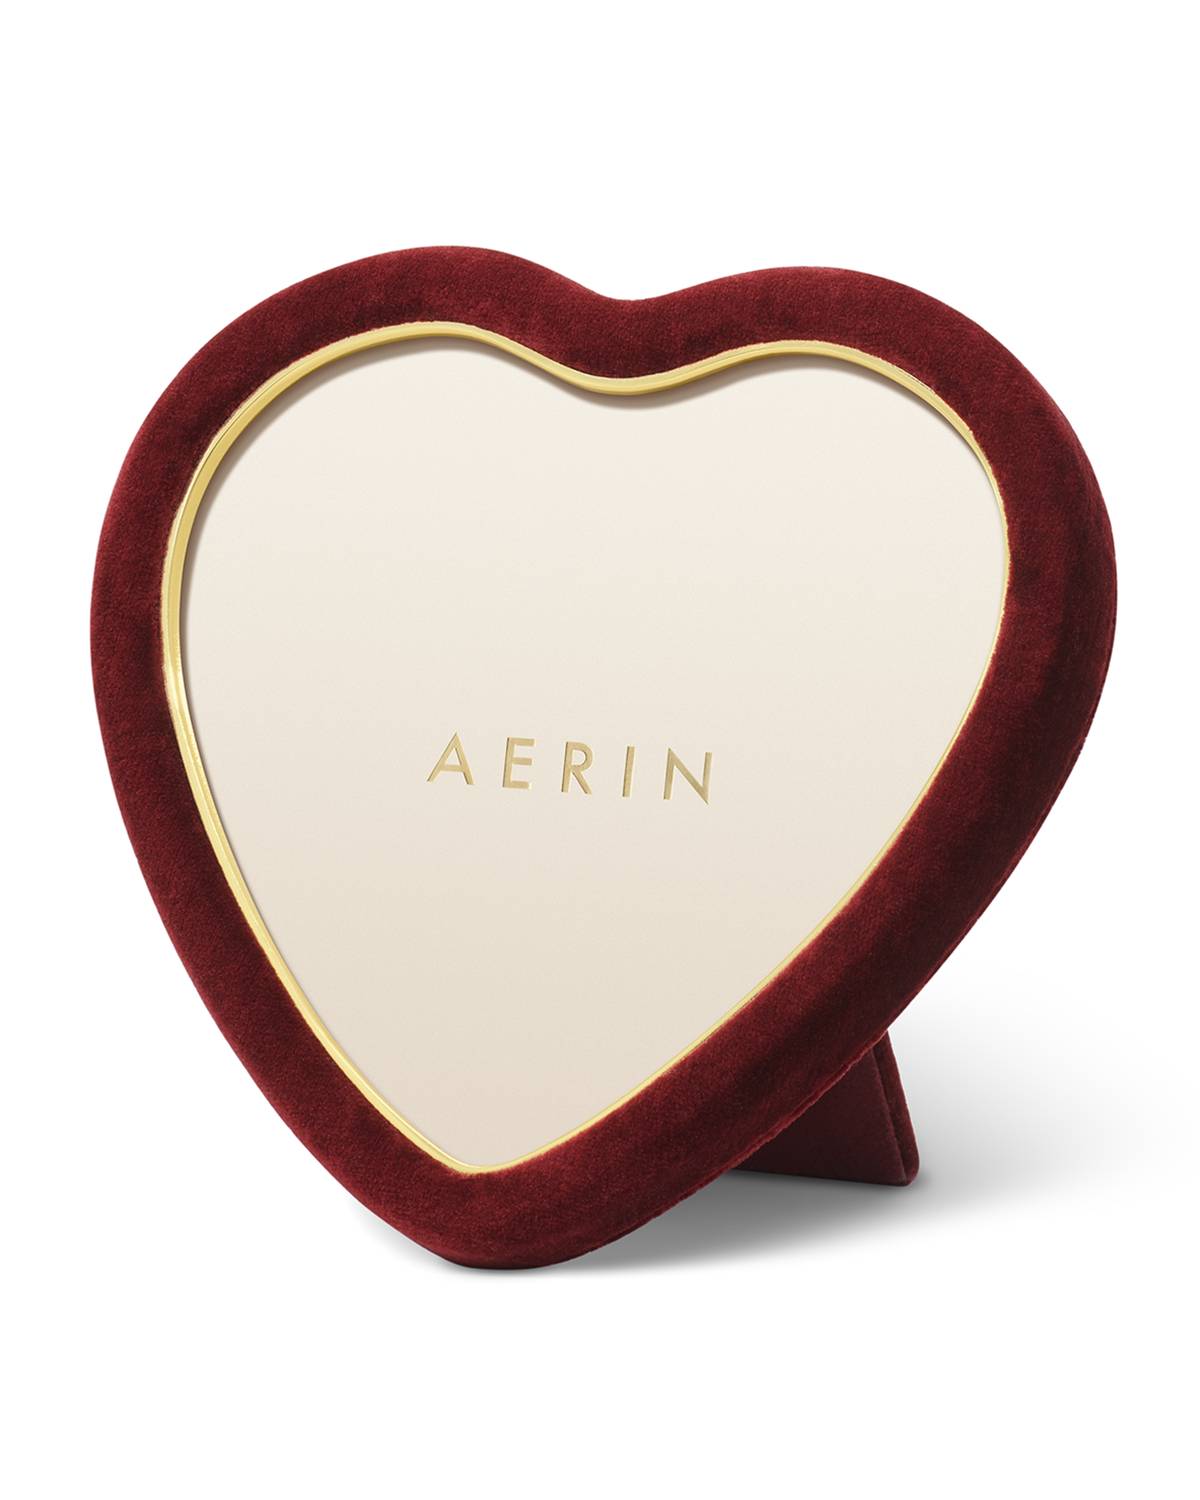 AERIN red velvet heart Picture Frame